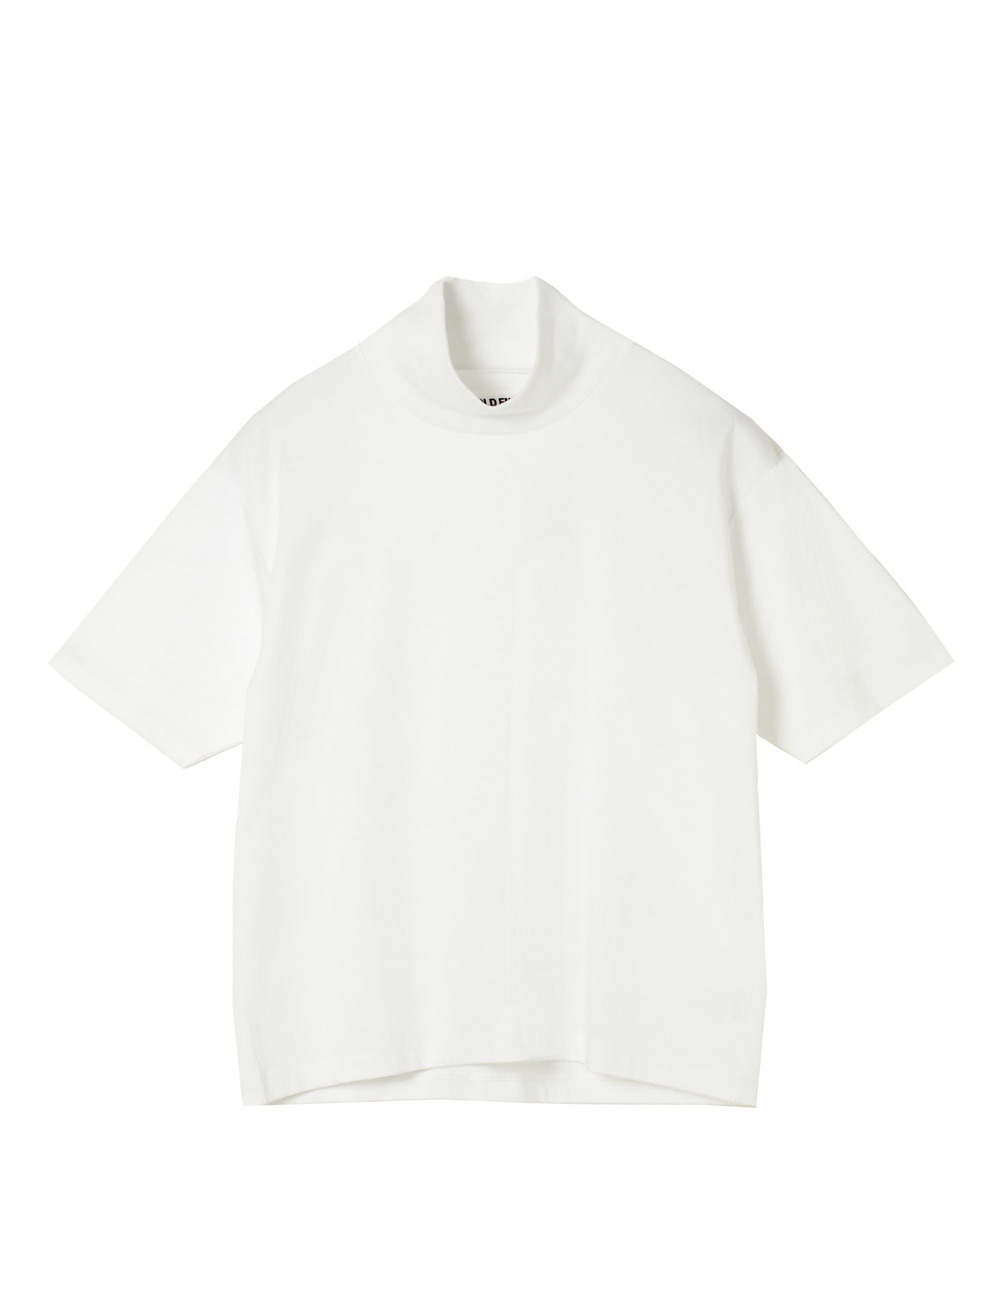 【WOMEN】コットンハイネックTシャツ 詳細画像 ホワイト 1